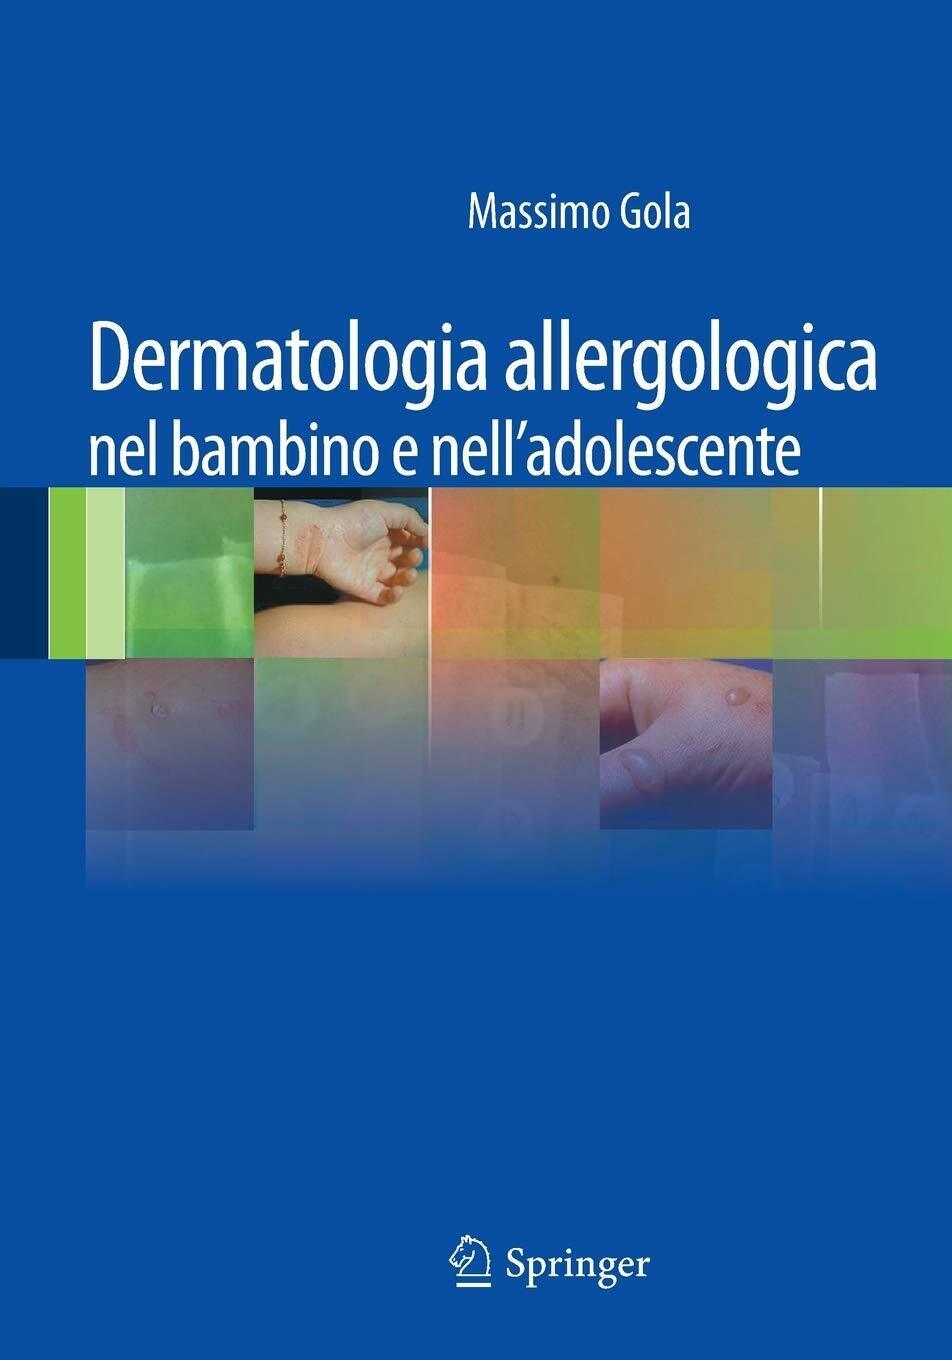 Dermatologia allergologica nel bambino e nell'adolescente - M. Gola - 2011